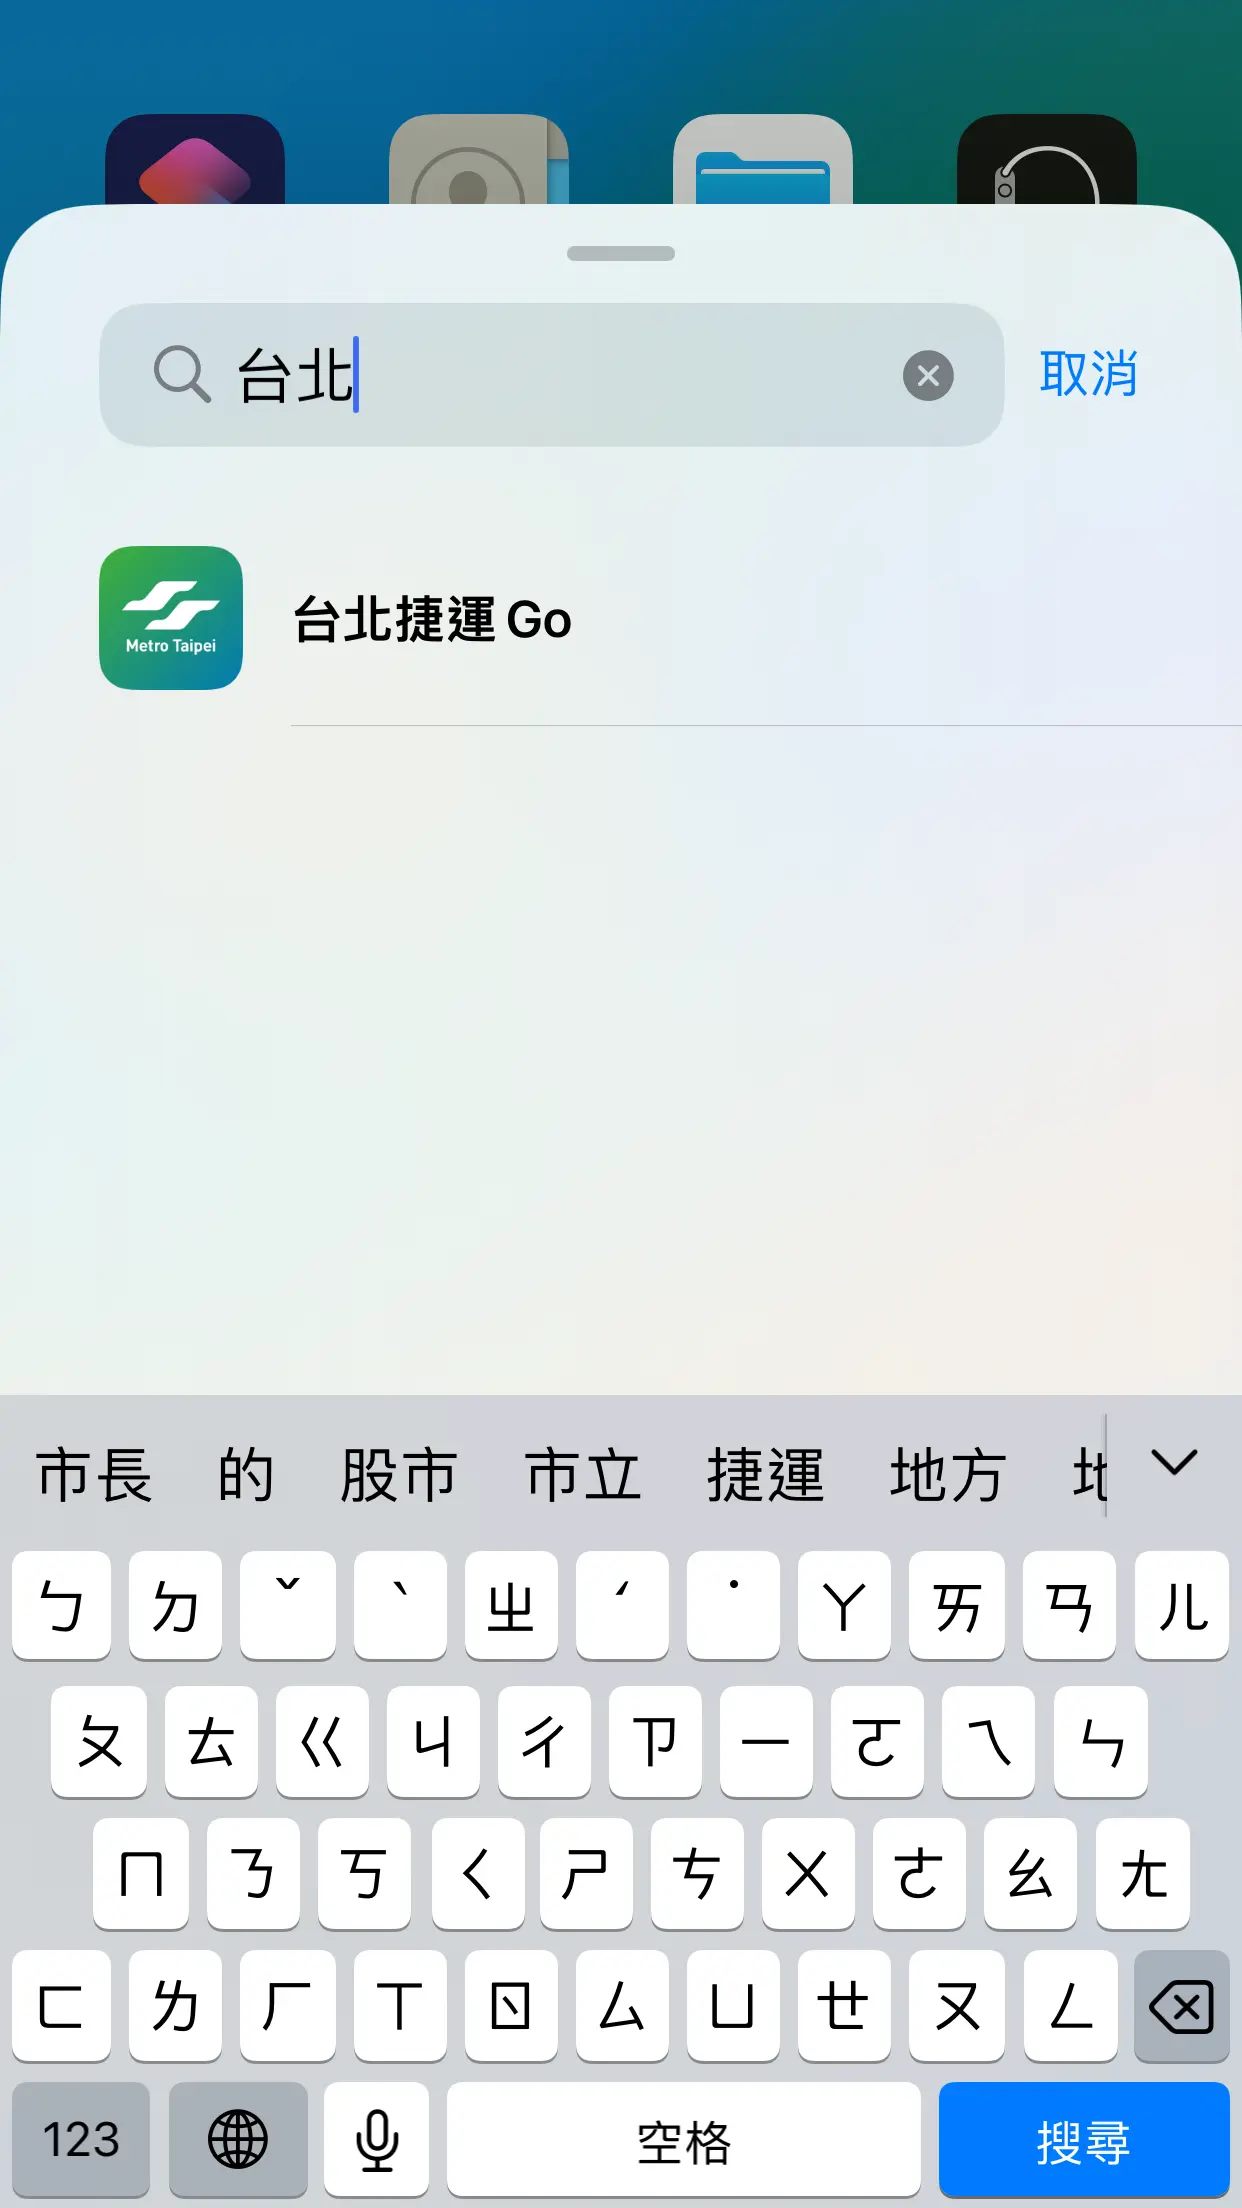 在Widge搜尋框中輸入「台北捷運Go」點選